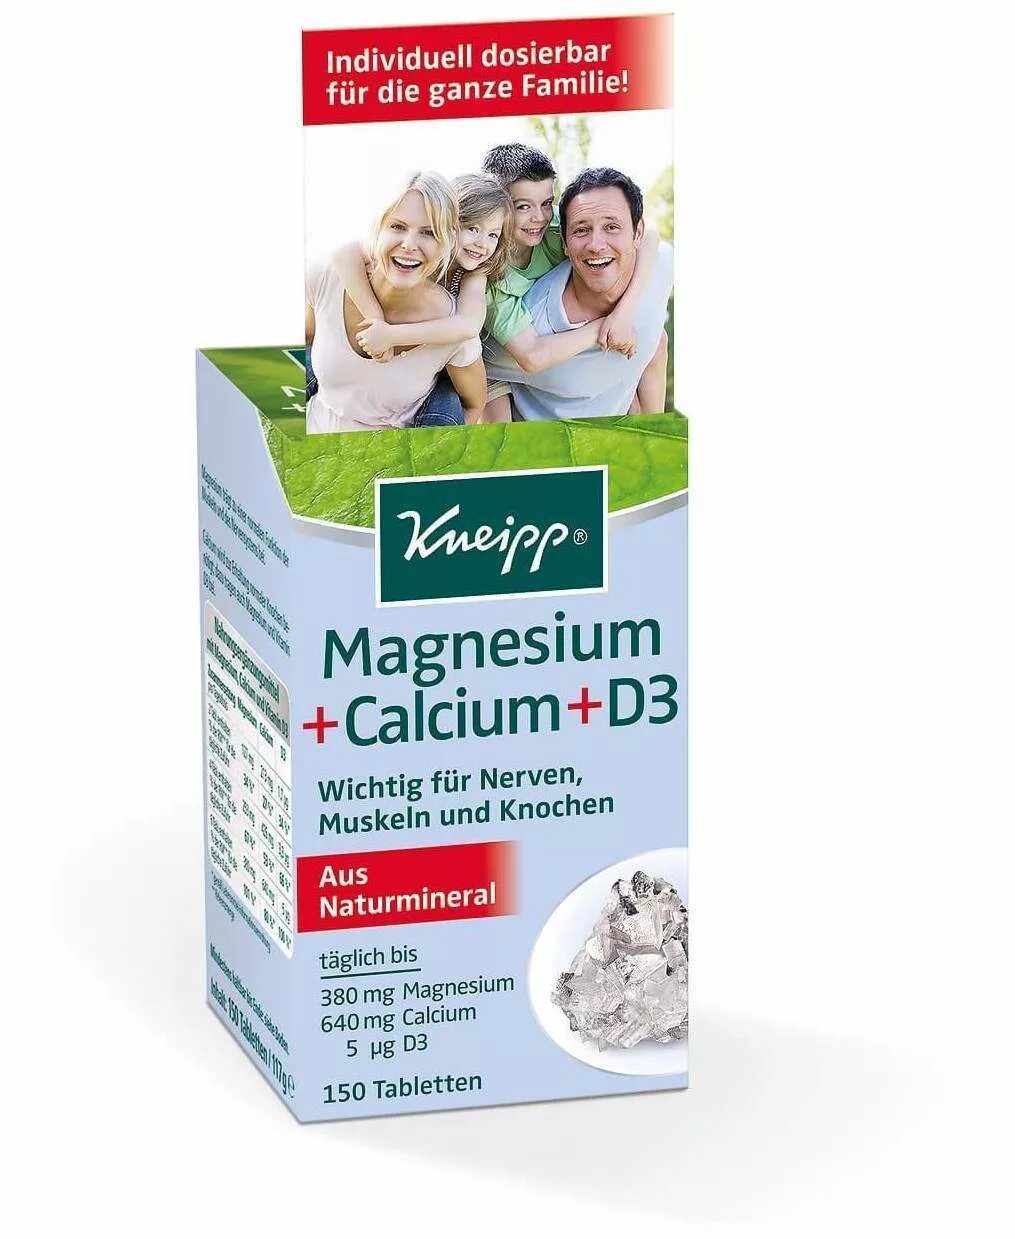 Витамины кальций магний d3. Витамины Kneipp Magnesium Calcium d3. Magnesium Calcium d3 Kneipp. Kneipp магний + кальций + d3 таблетки, 150 шт. Calcium d3 порошок.